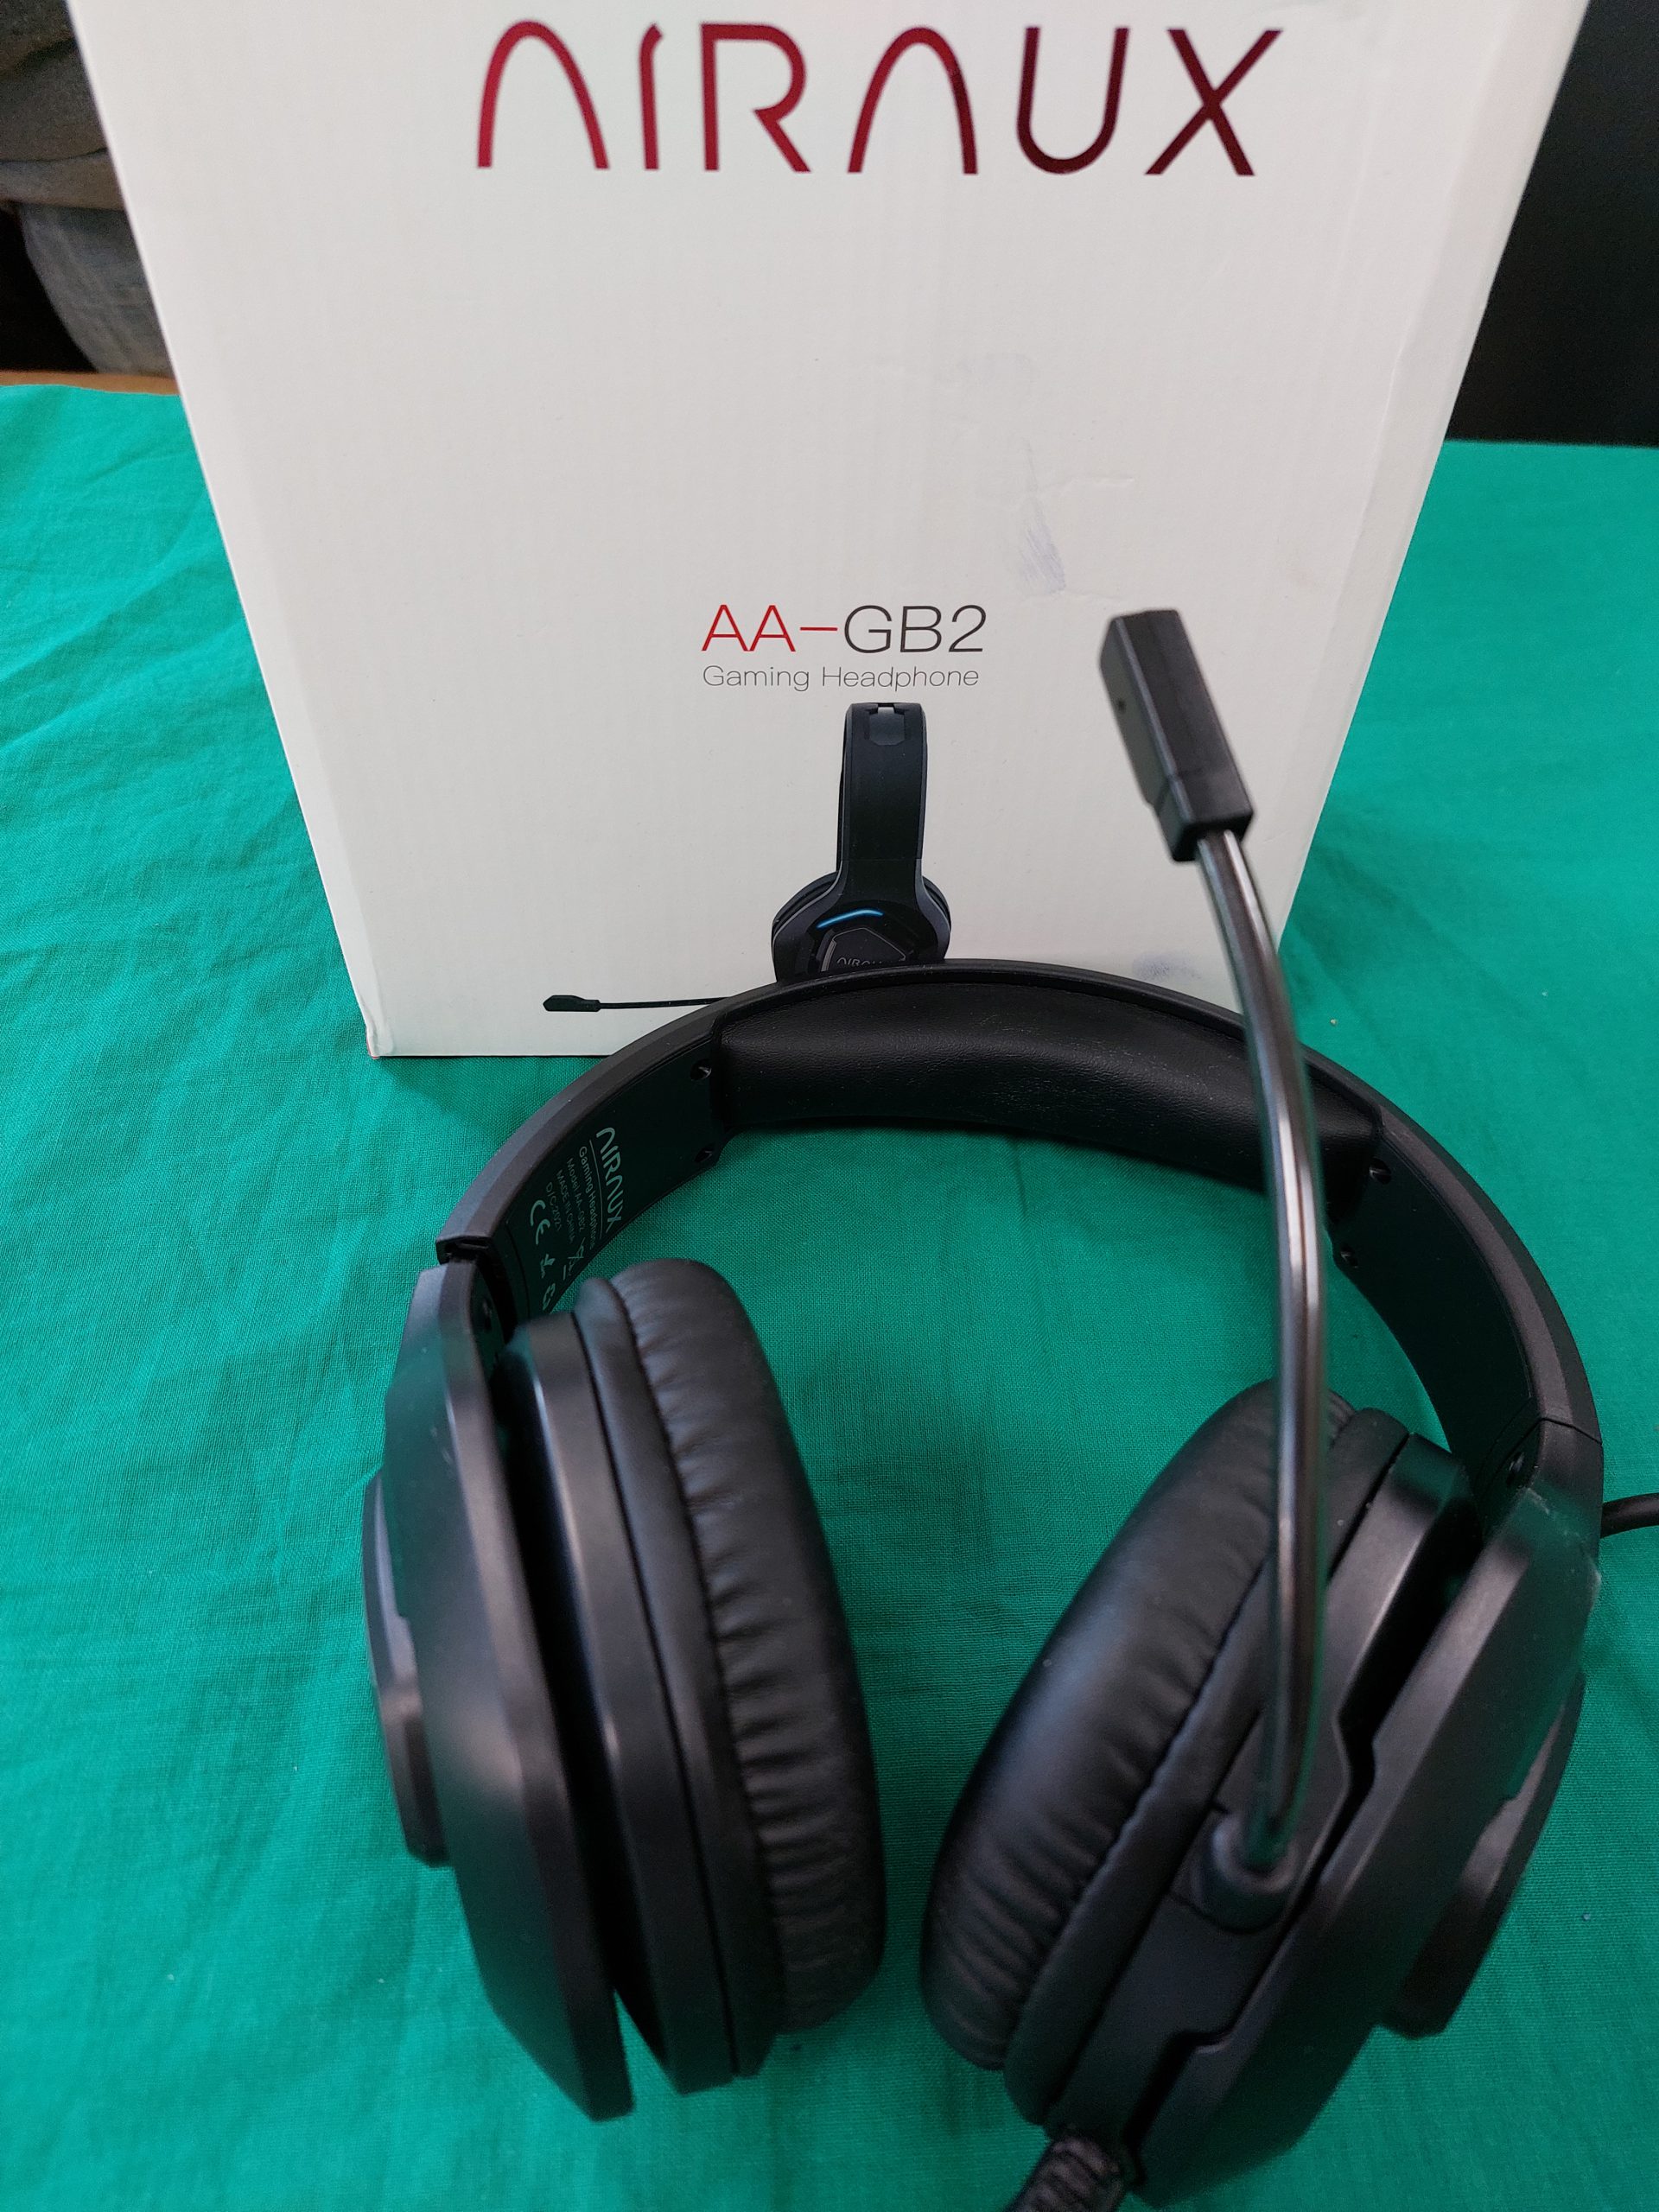 AIRAUX AA-GB2 gamer fejhallgató, kiemelt kép